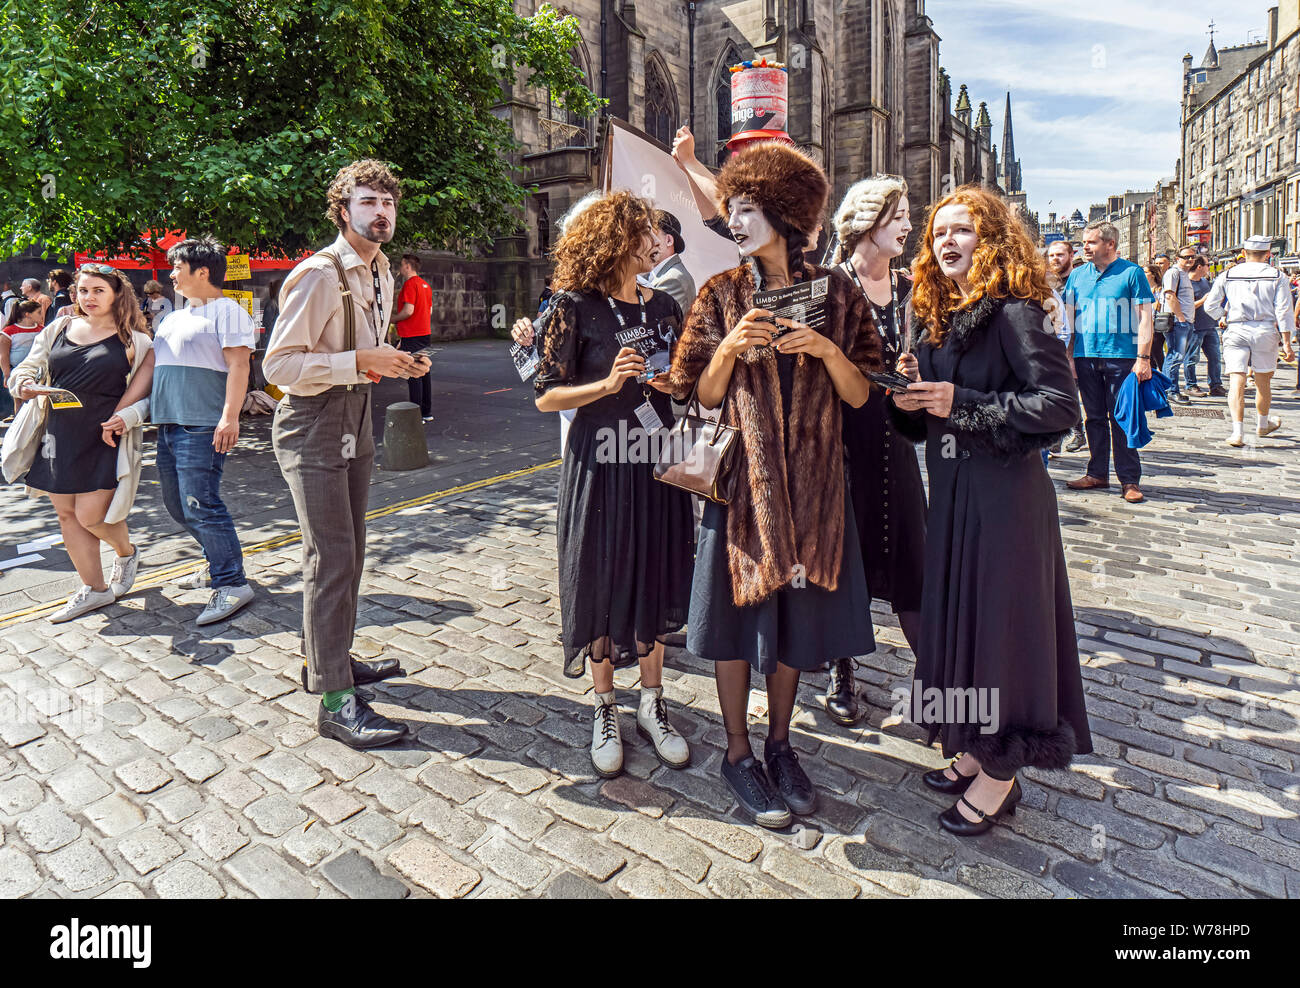 Treffpunkt Theater Gruppe Förderung Limbo Theater spielen am Edinburgh Festival Fringe 2019 in der Royal Mile in Edinburgh Schottland Großbritannien Stockfoto